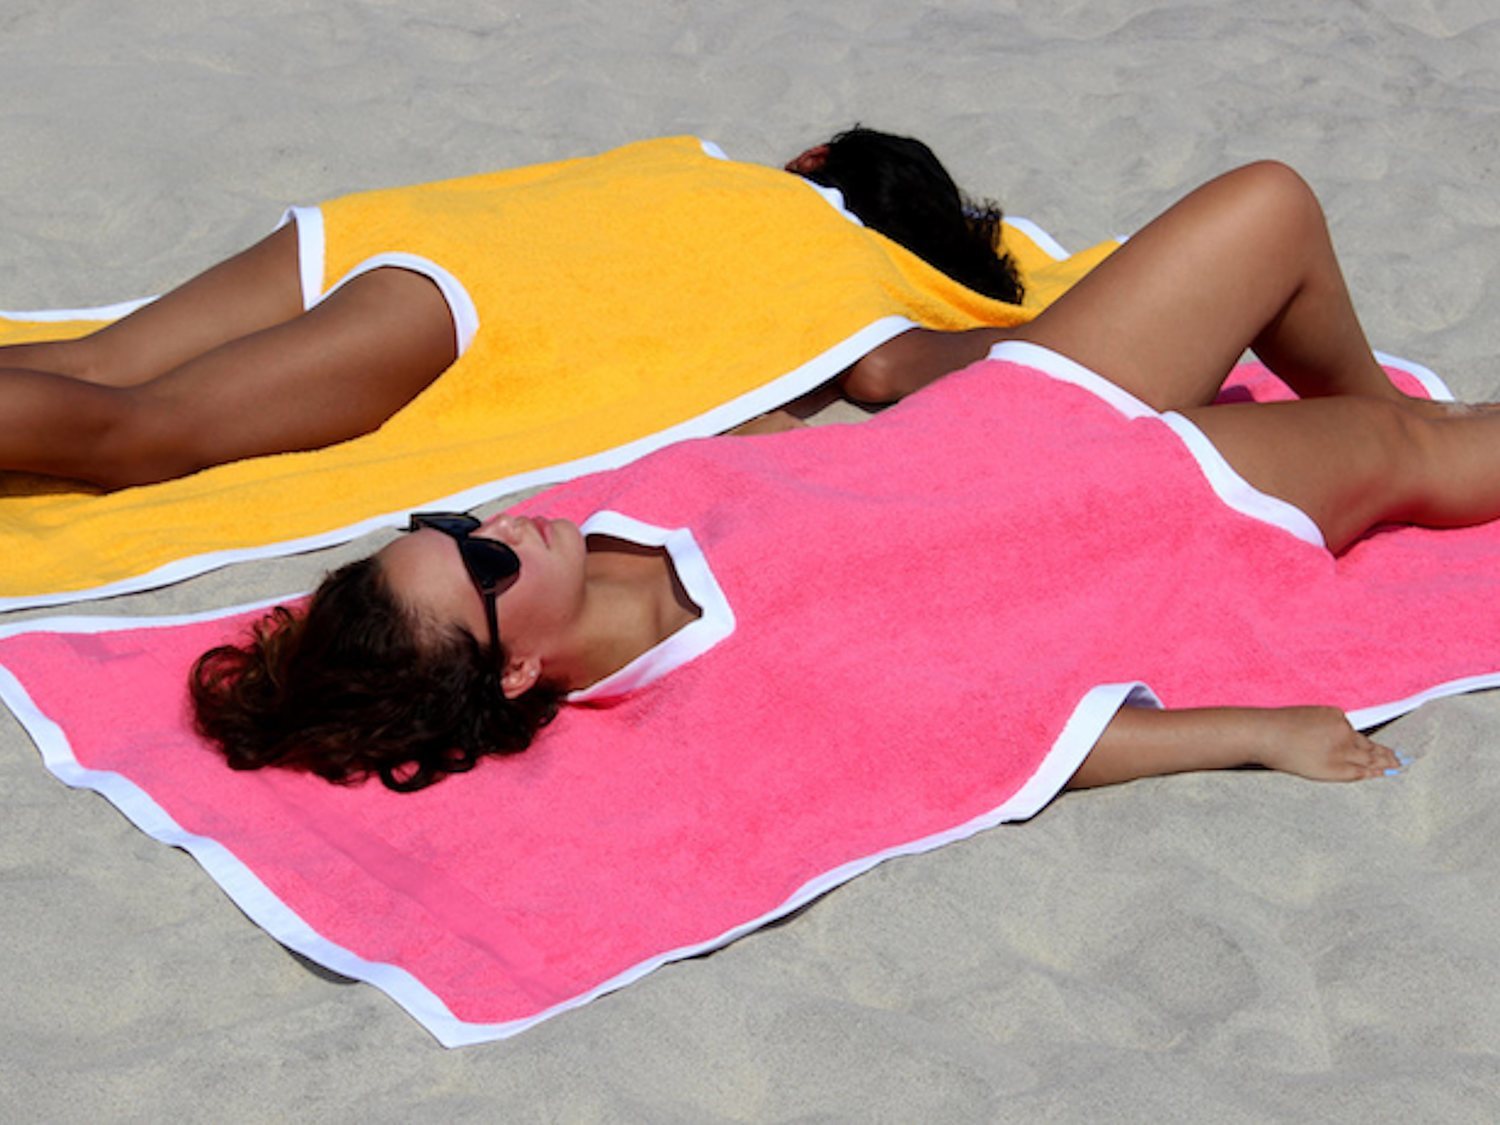 El towelkini, la última moda del verano que une la toalla y el bañador